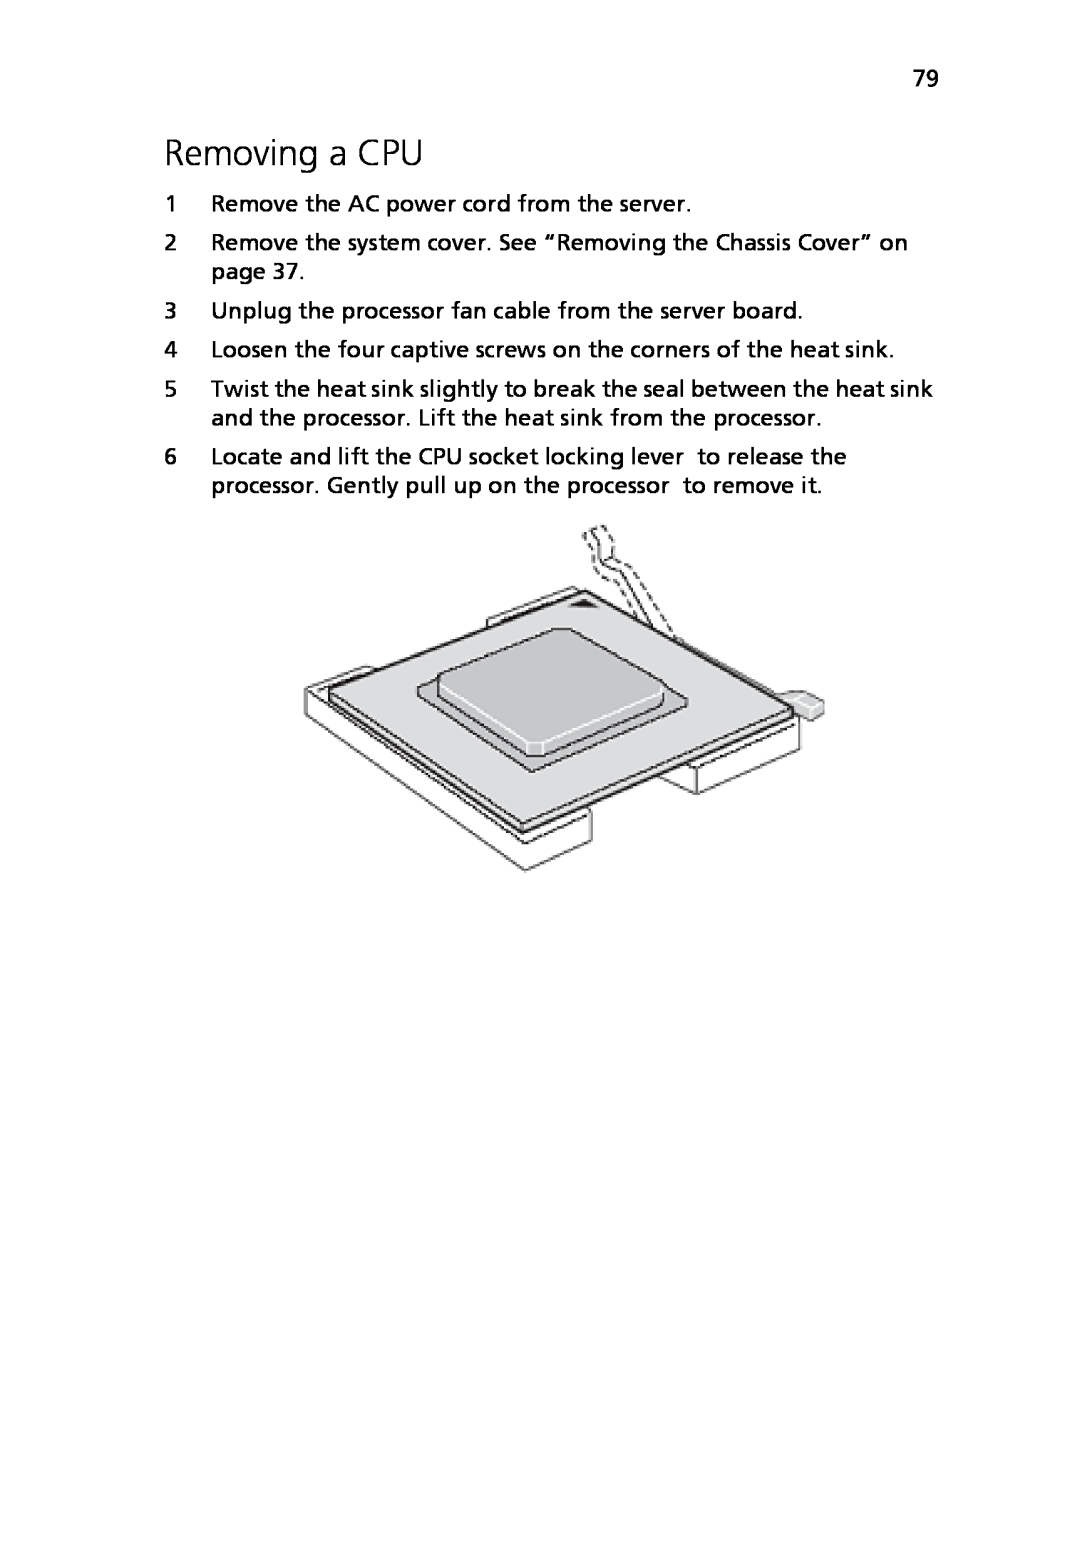 Acer Altos R710 manual Removing a CPU 